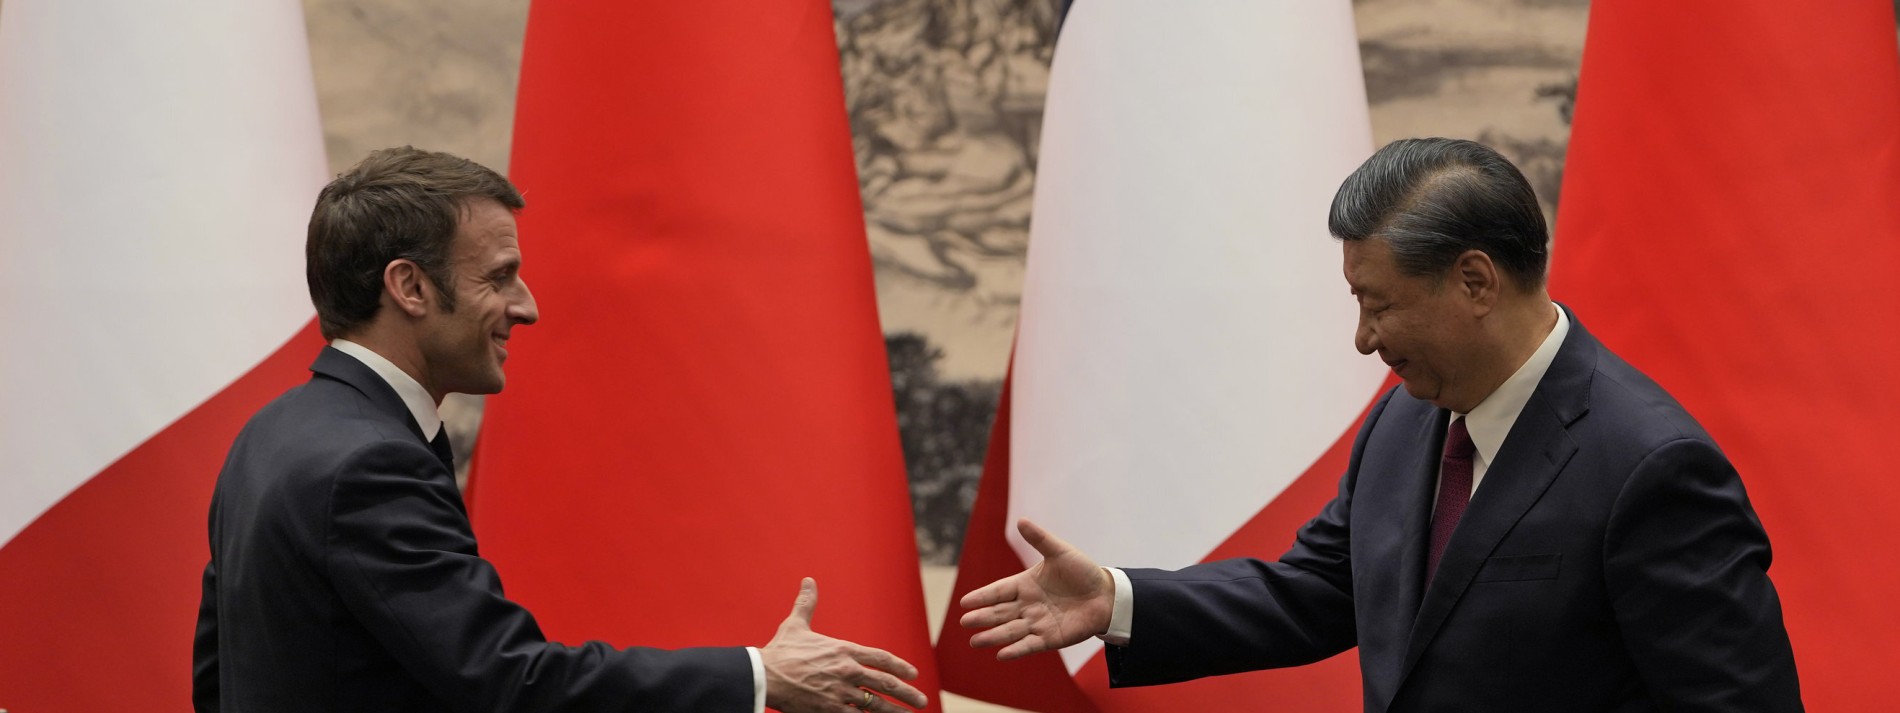 Warum Scholz beim Gespräch mit Xi nicht dabei sein will